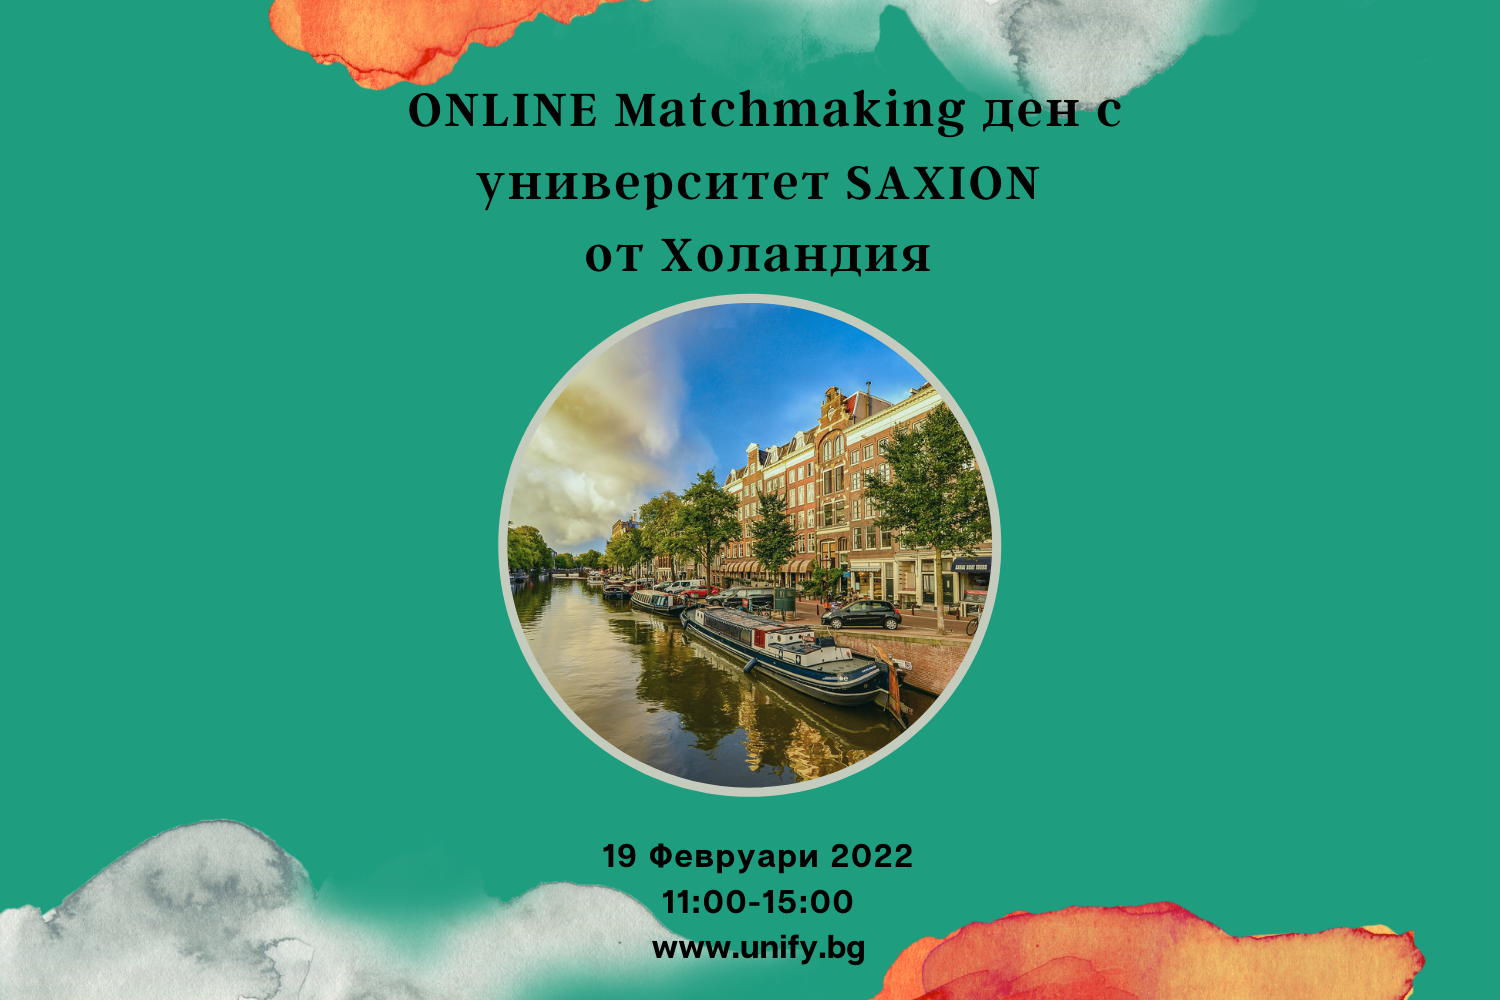 ONLINE Matchmaking ден с университет Saxion от Холандия